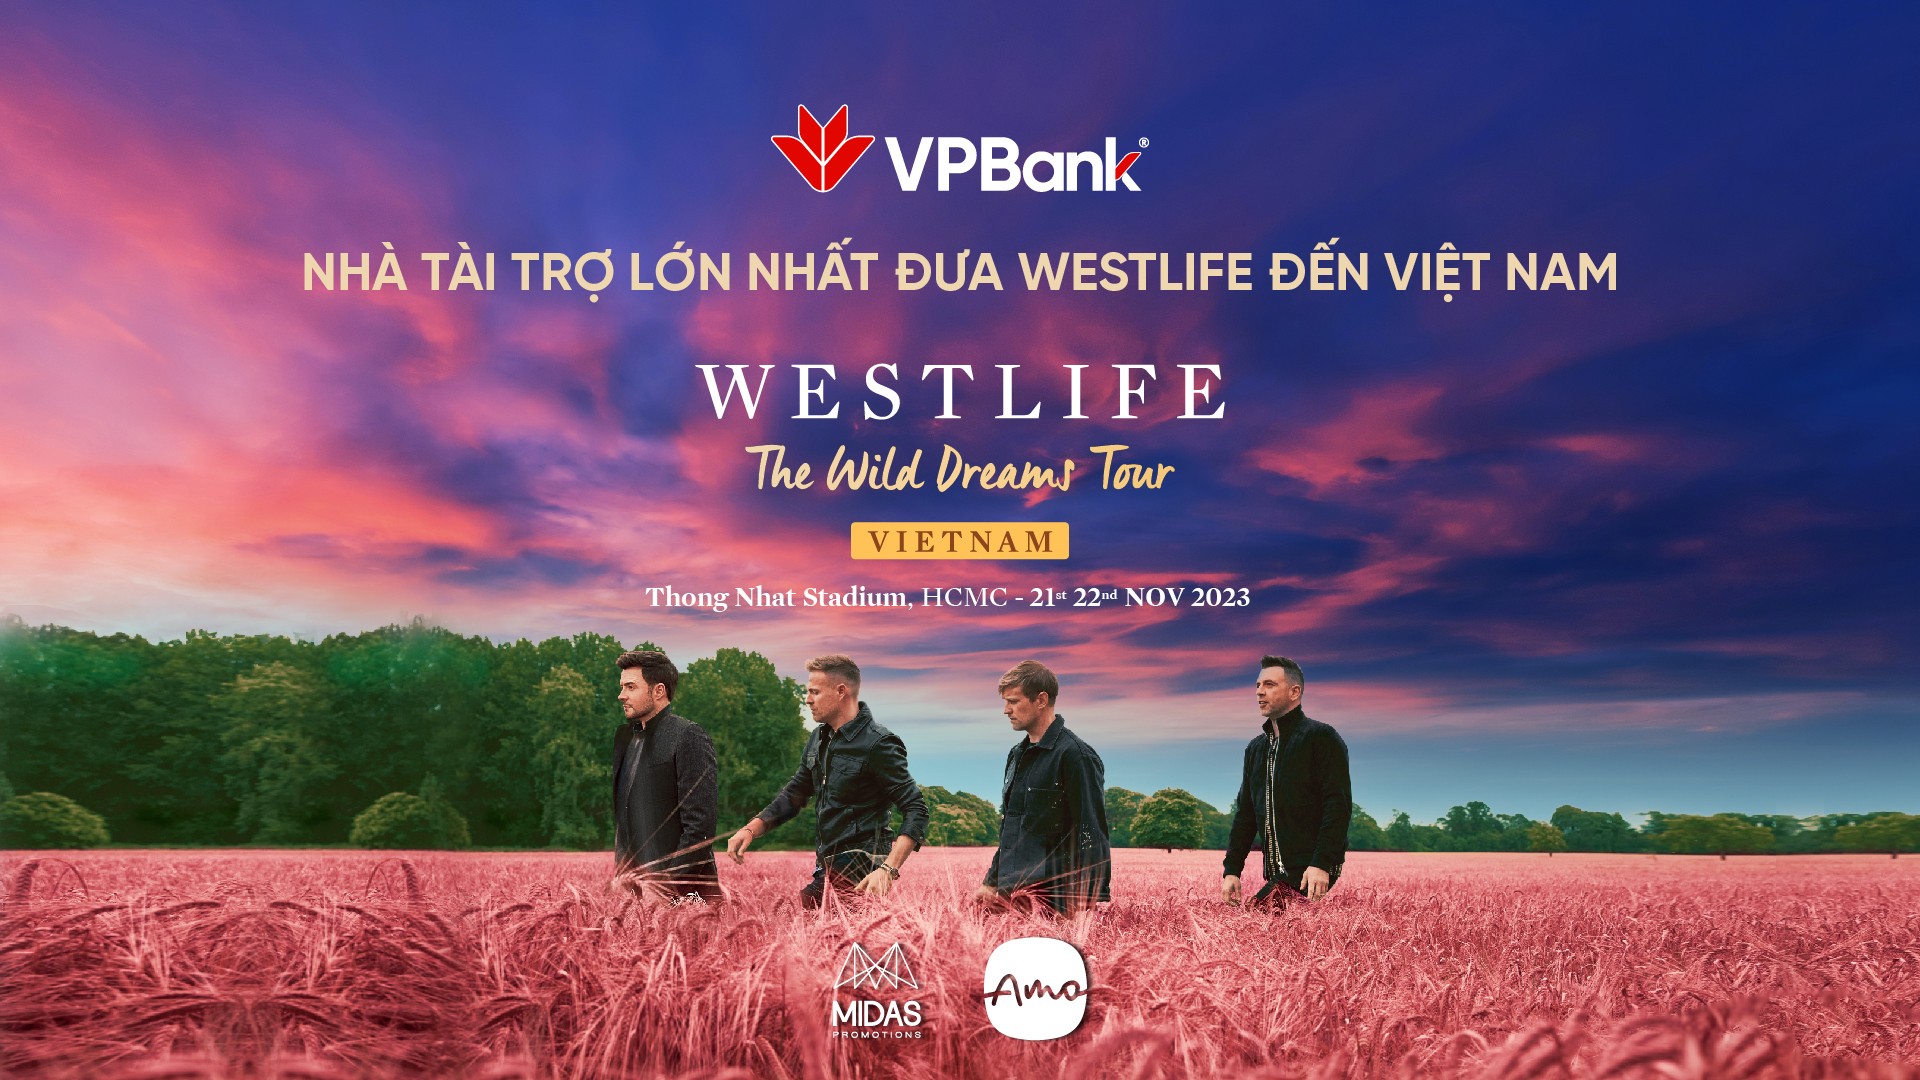 vpbank-westlife-kv-official-1697858096.jpg